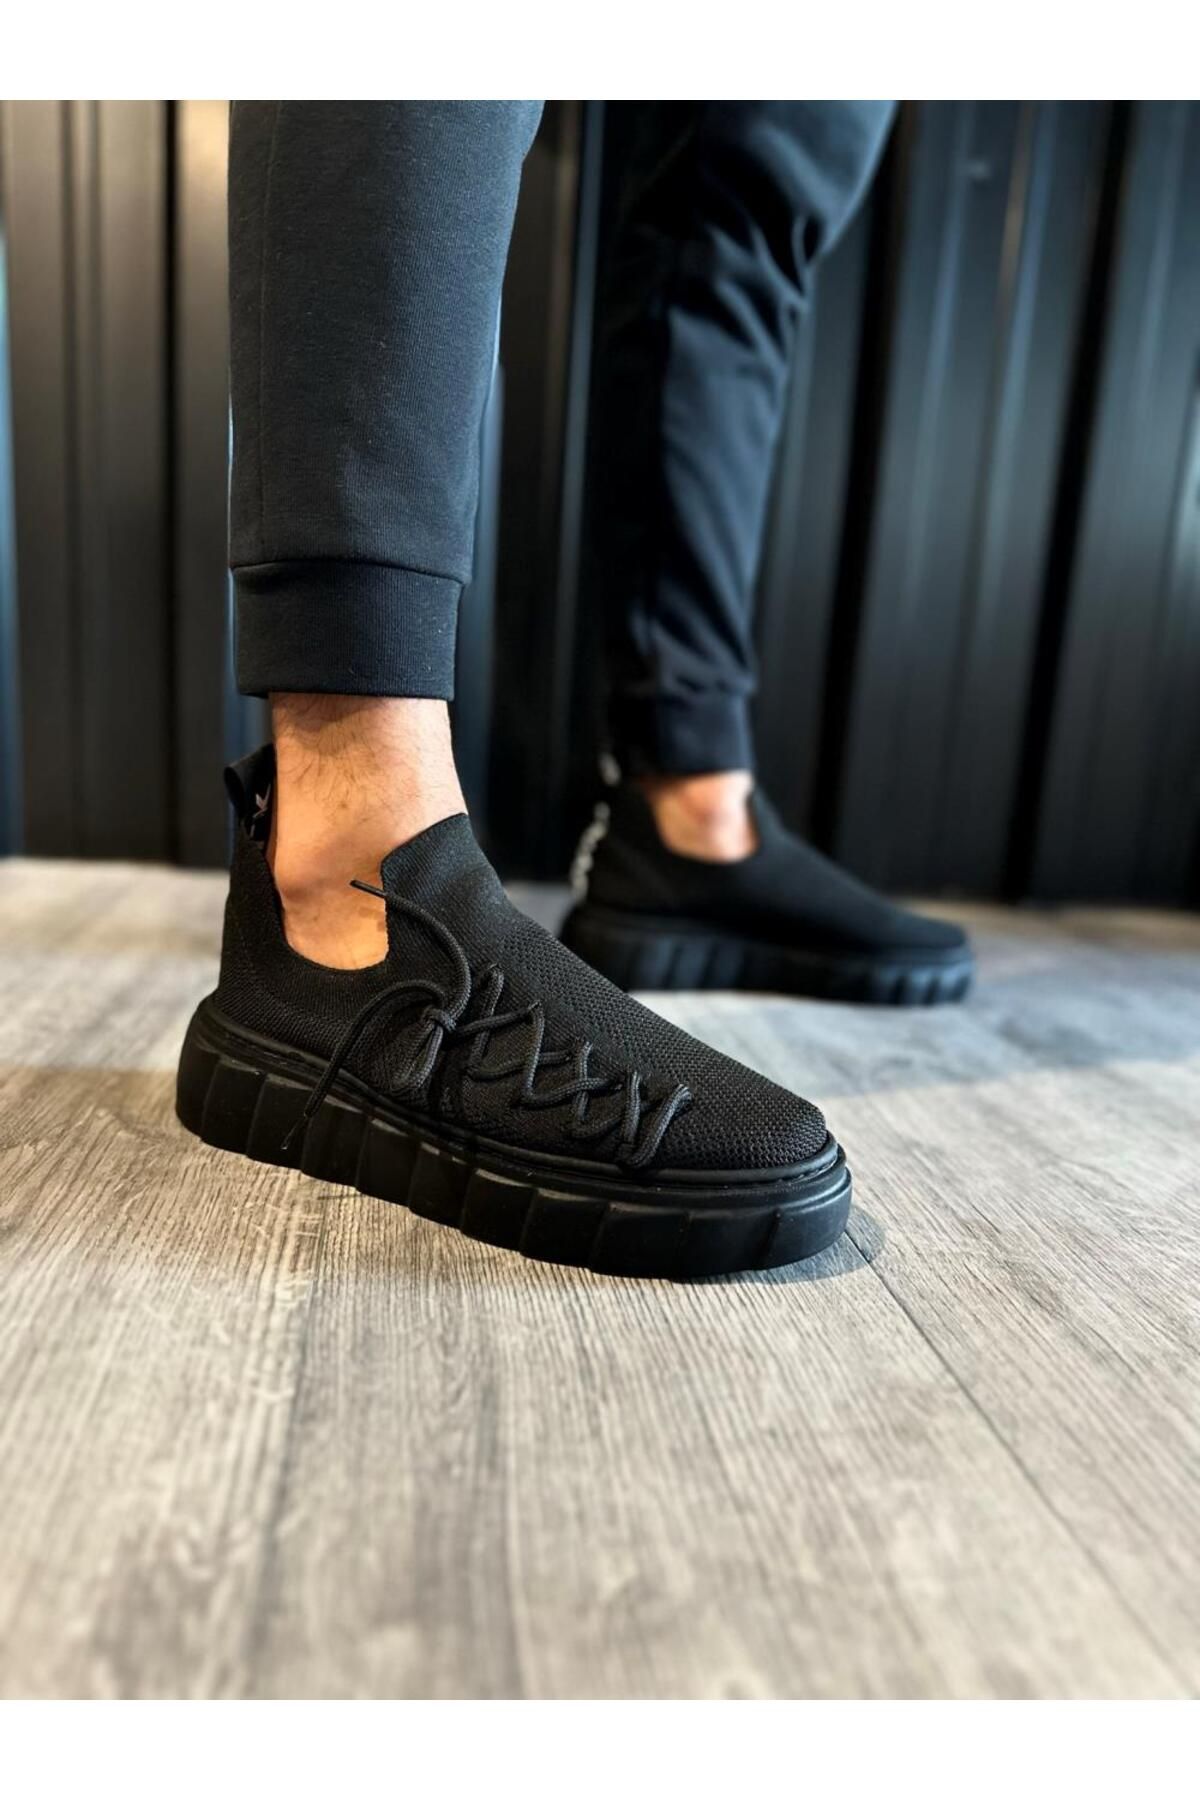 BZ Moda B1025 ST Bağcıklı Ortopedik Taban Triko Erkek Sneaker Ayakkabı Siyah